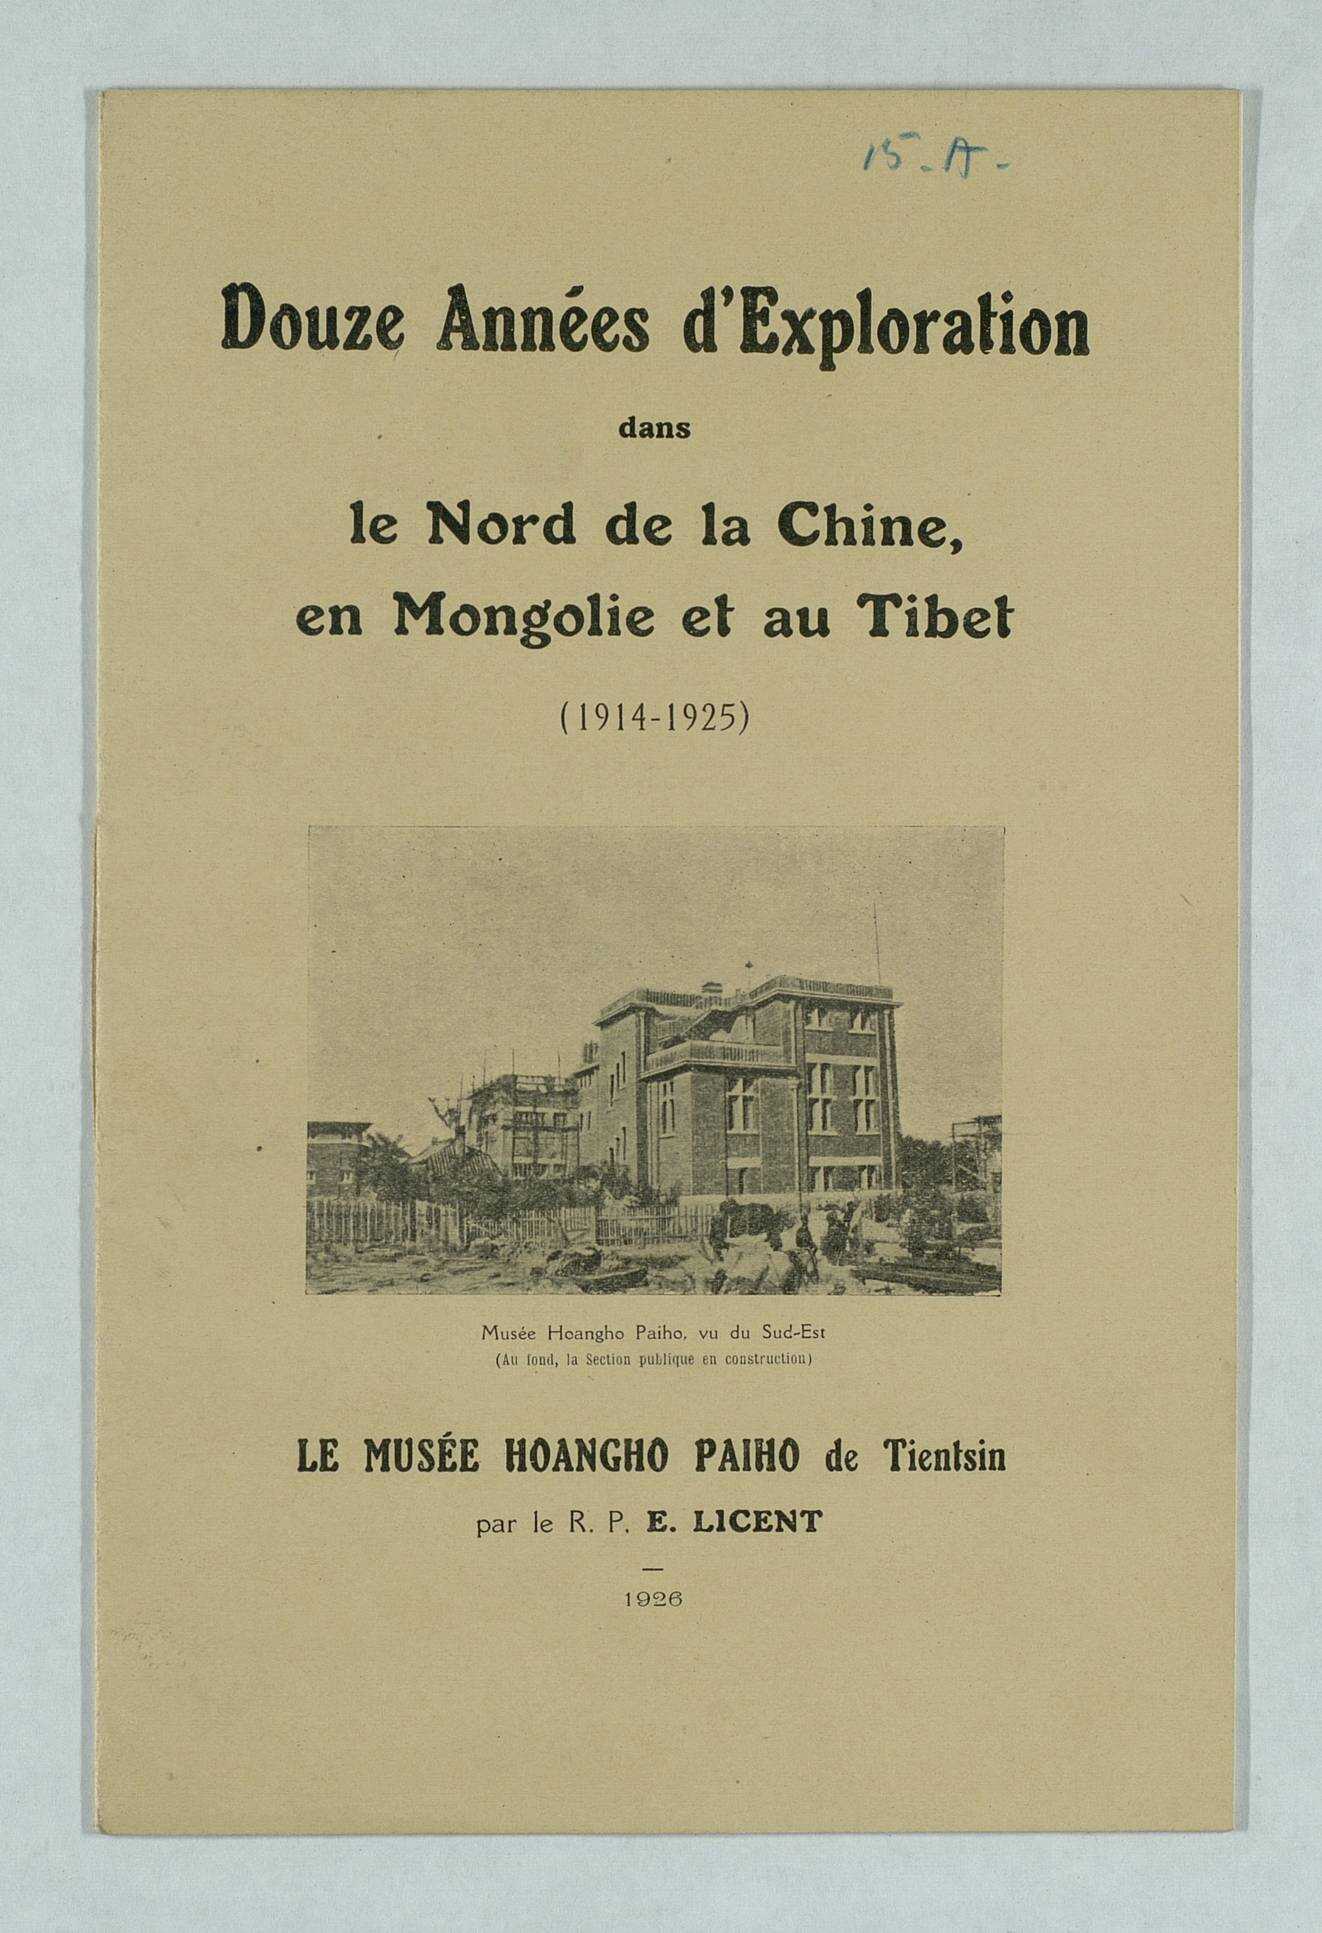 15-E - Missions et voyages d'exploration : pères Leroy, Licent, Bouvier, Marteau... (1923-1939)
15-F - Enseignement du chinois (1926-1927)